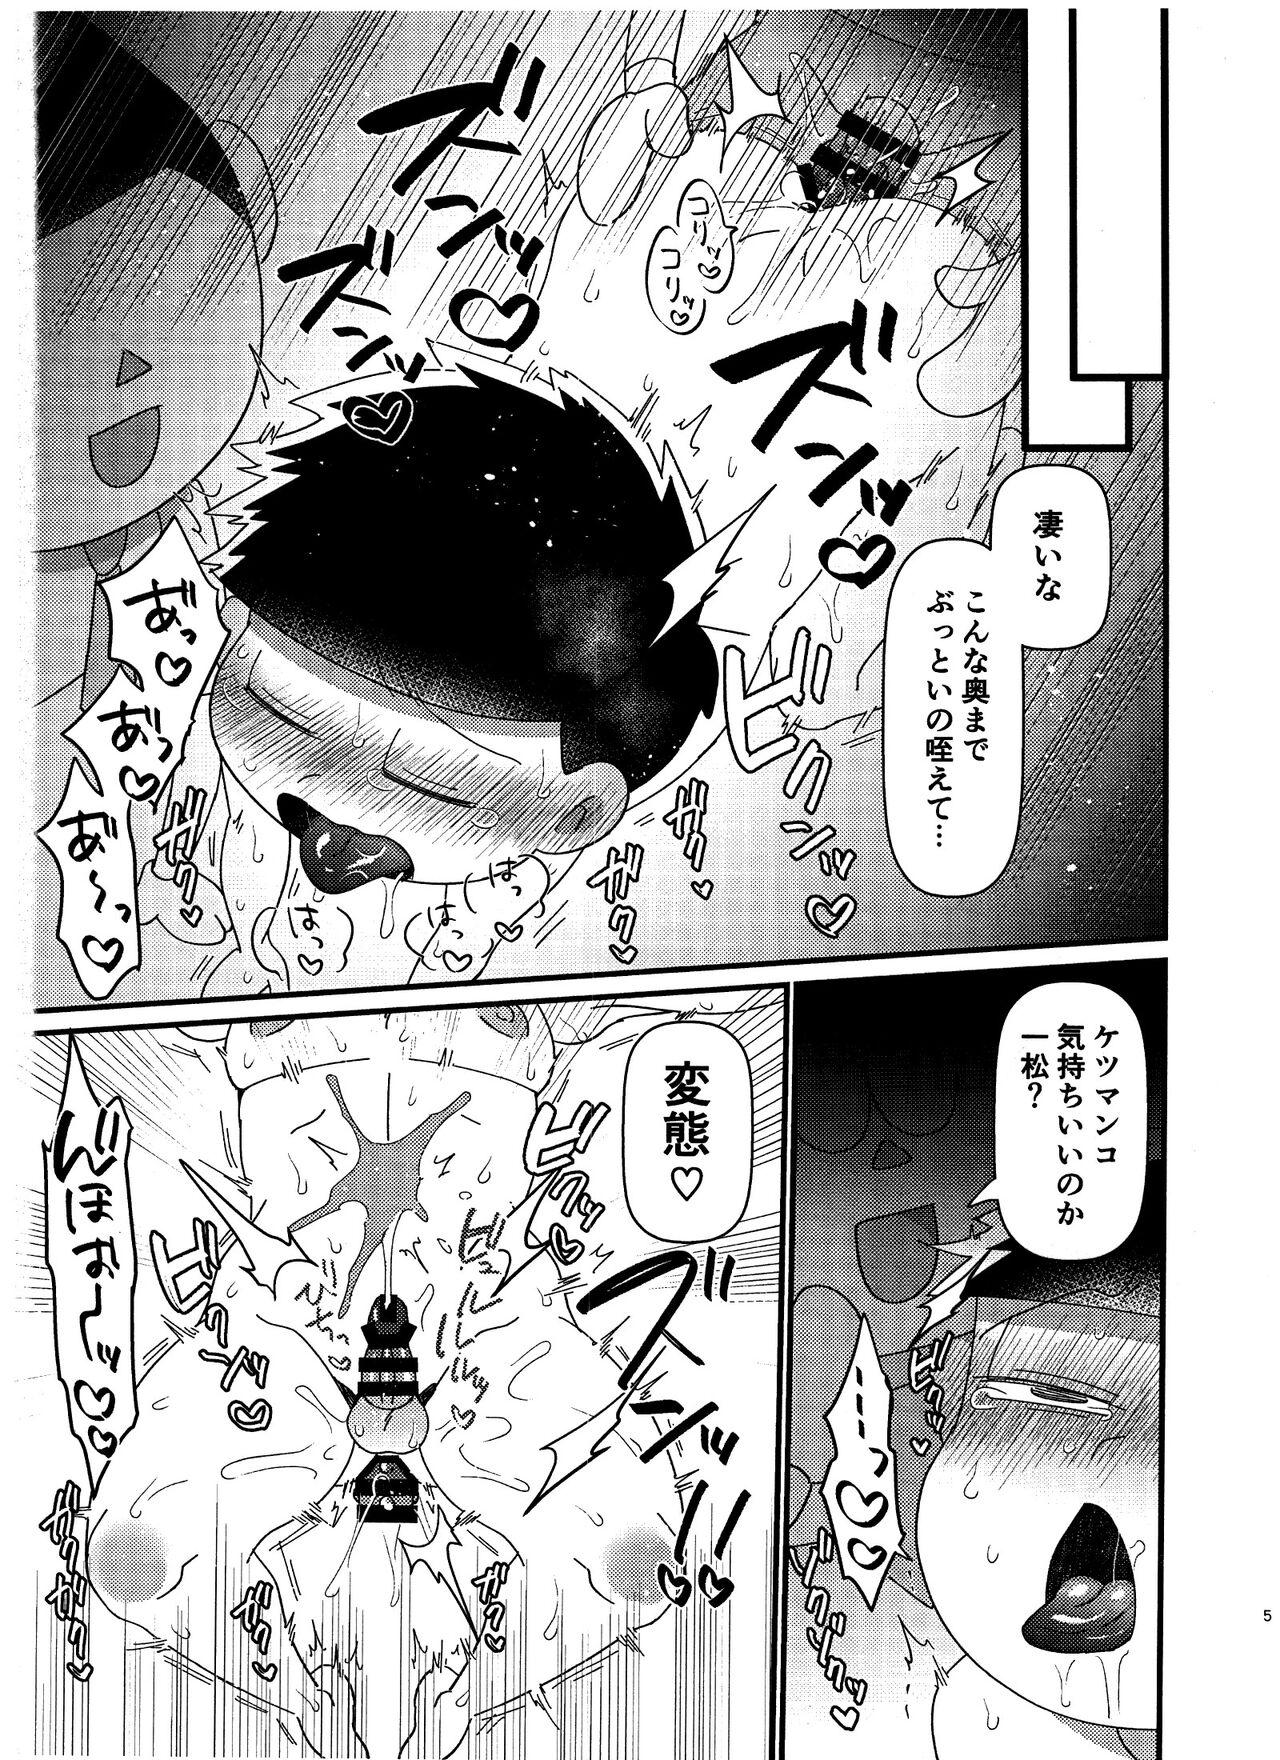 Nipple # 22 Kara matsunokoe manewosuru AIx Ichimatsu no hon - Osomatsu san Grosso - Page 5